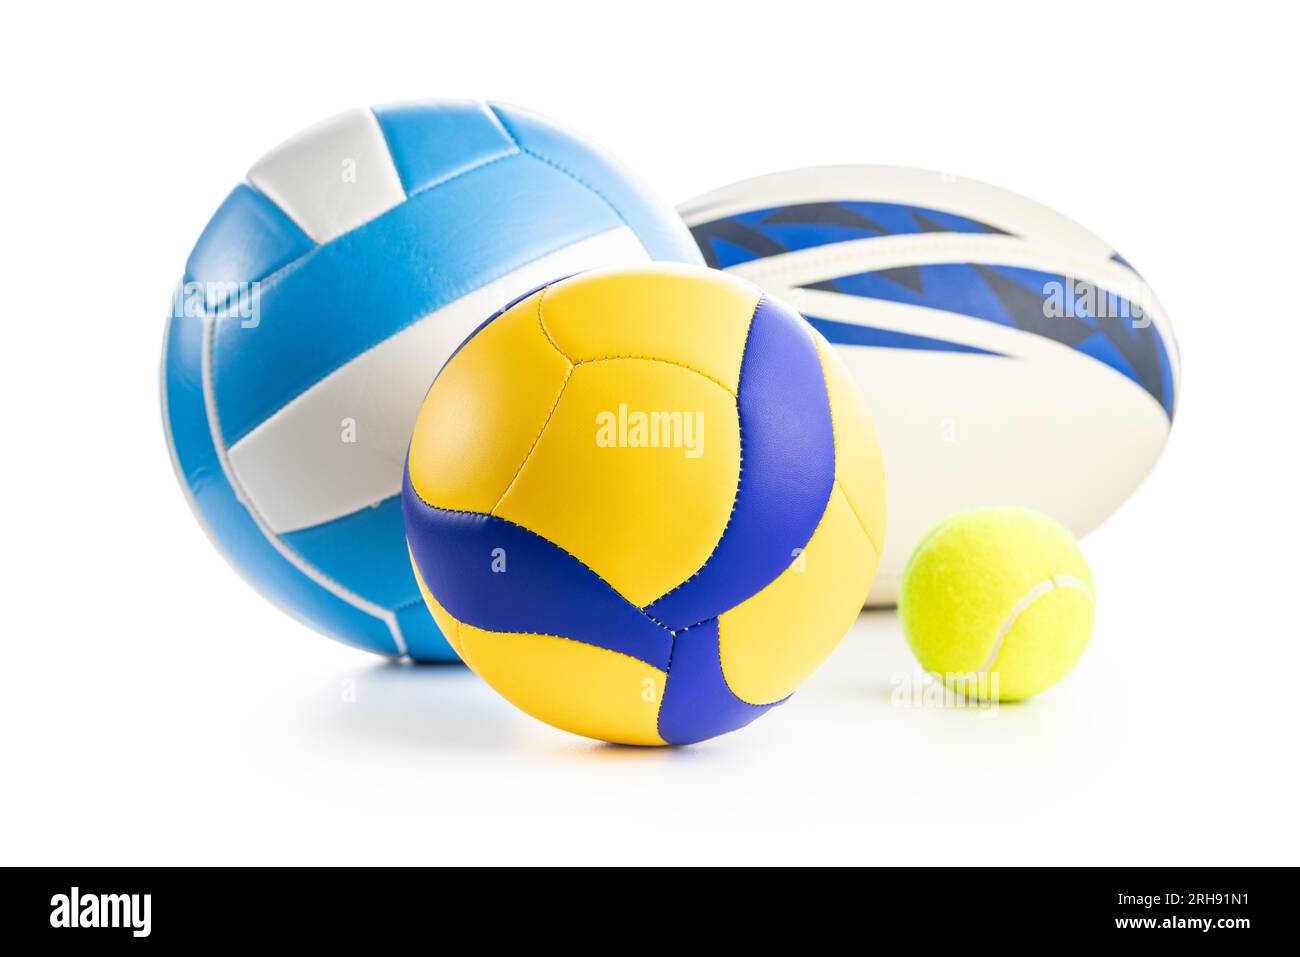 Pallavolo, tennis e rugby isolati su sfondo bianco. Varie palle sportive. Foto Stock